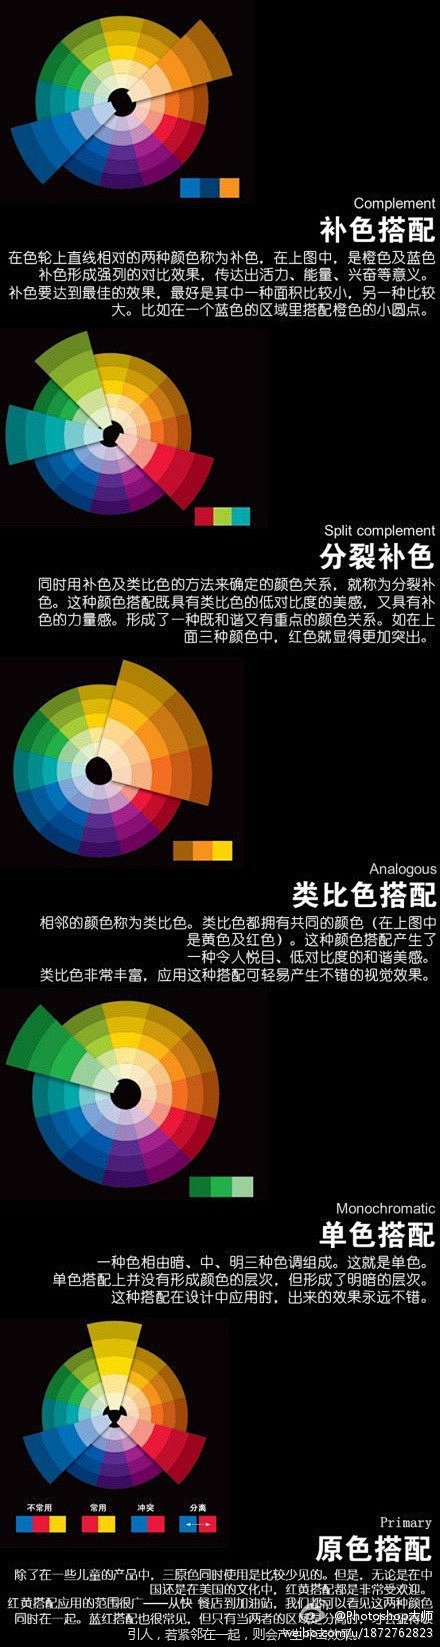 色彩搭配 | 视觉中国